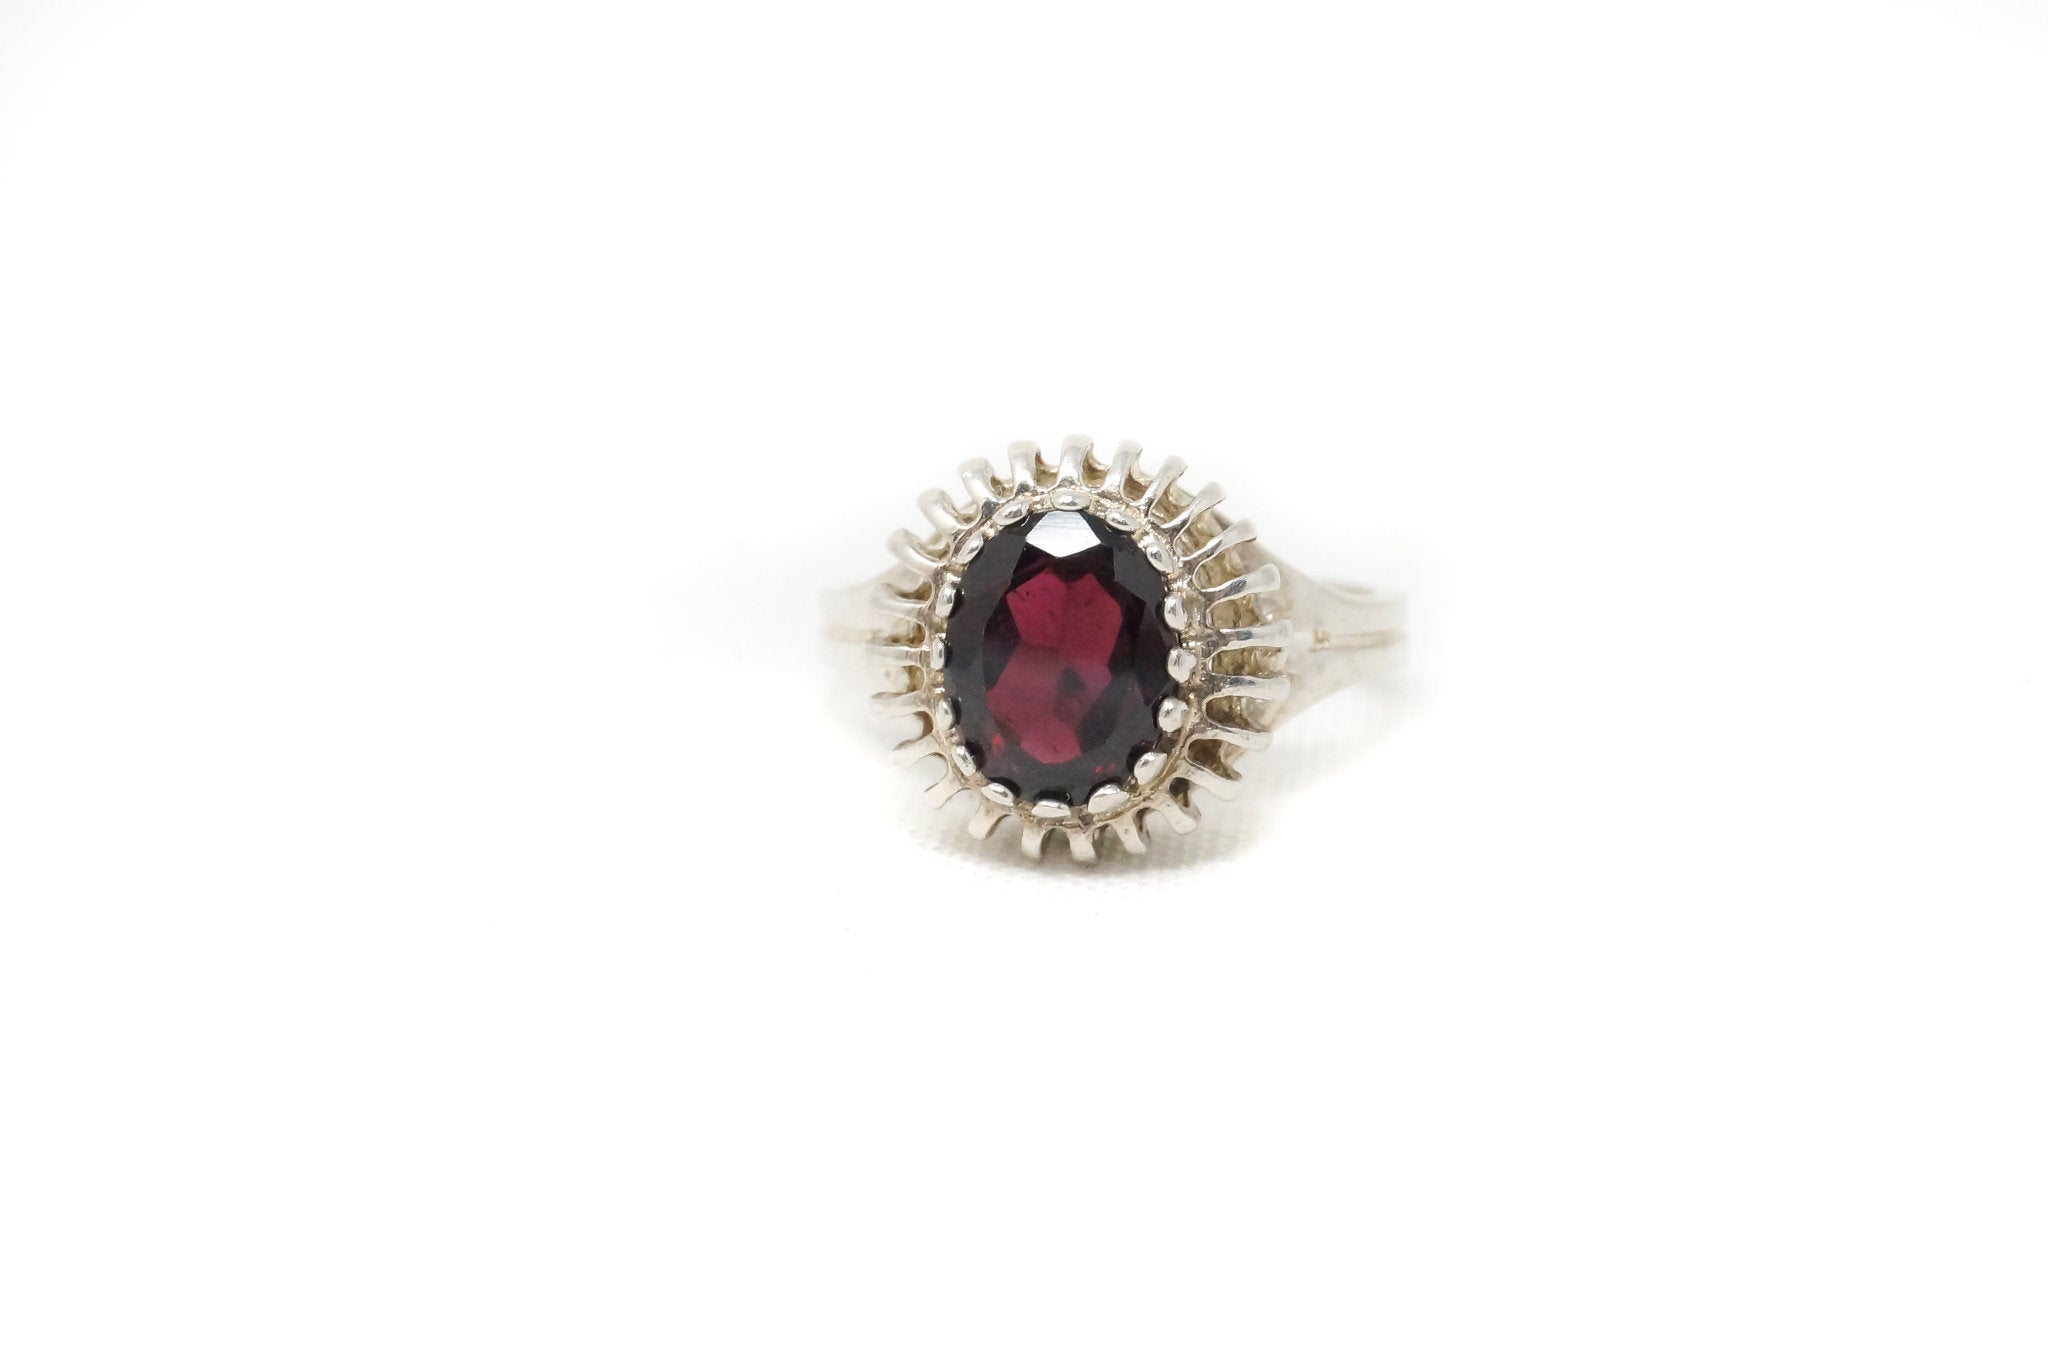 Vintage Art Deco Style Red Garnet Sterling Silver Modernist Ring Size 6.75